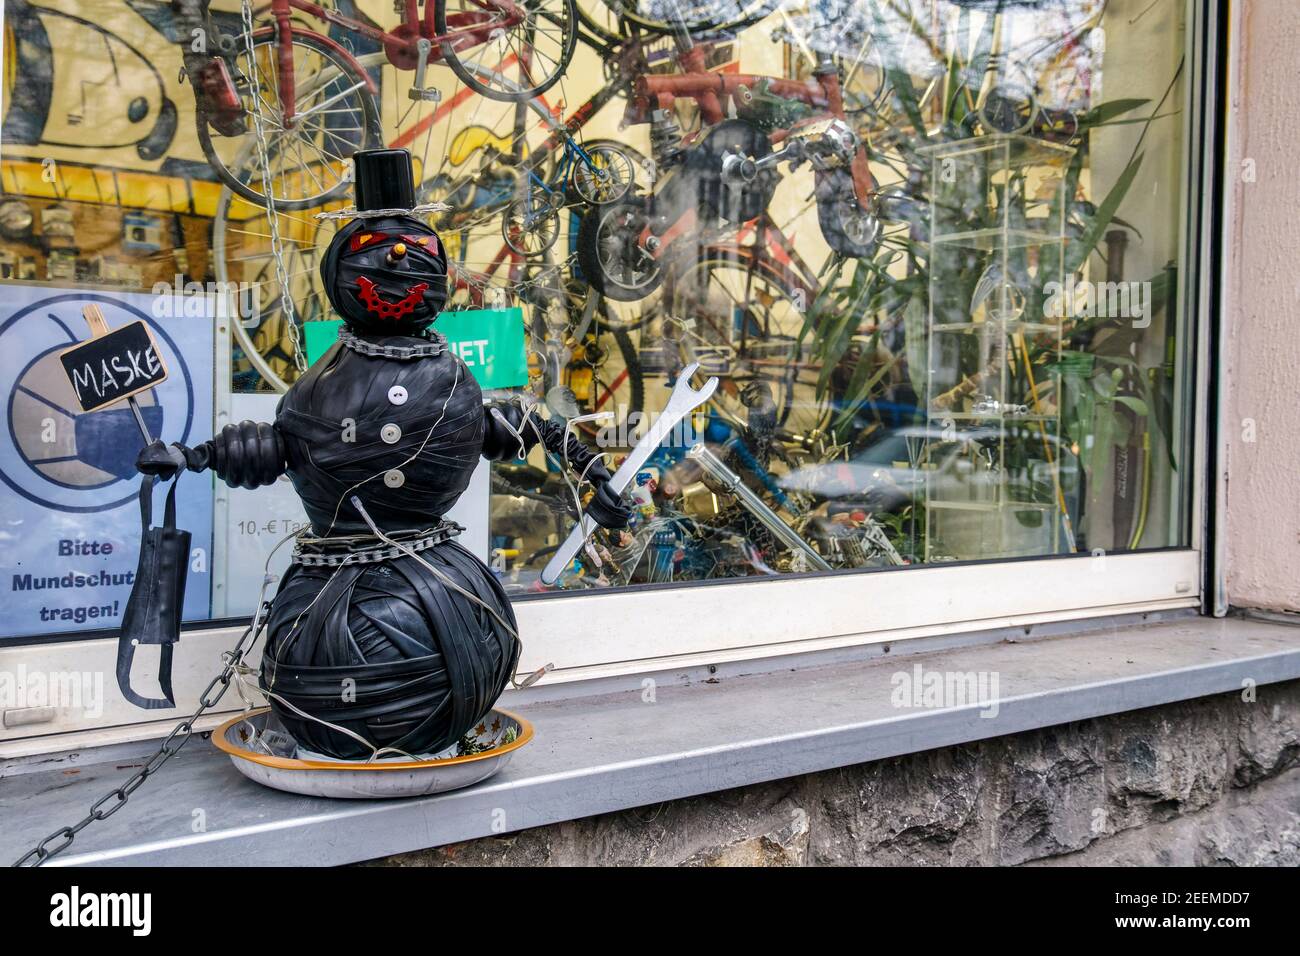 Lustige Figur vor Schaufenster von Fahrradladen in Kreuzberg, Reparaturwerkstatt, Hinweis auf Maskenpflicht während der Corona-Pandemie, Berlin-Kreuzb Stockfoto